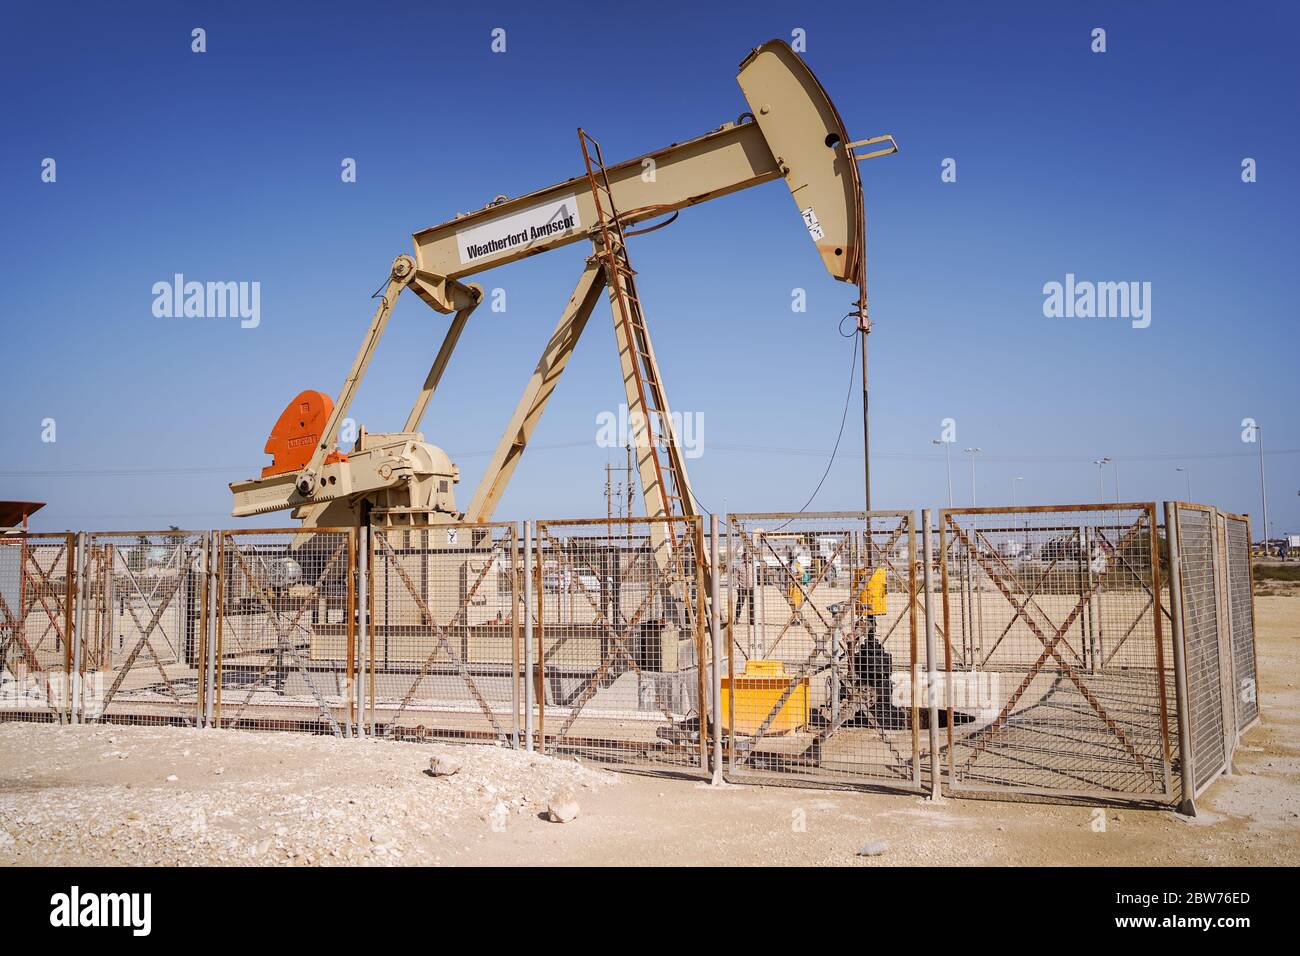 Öl-Pumpe in der Wüste stockfoto. Bild von erdöl, maschinerie